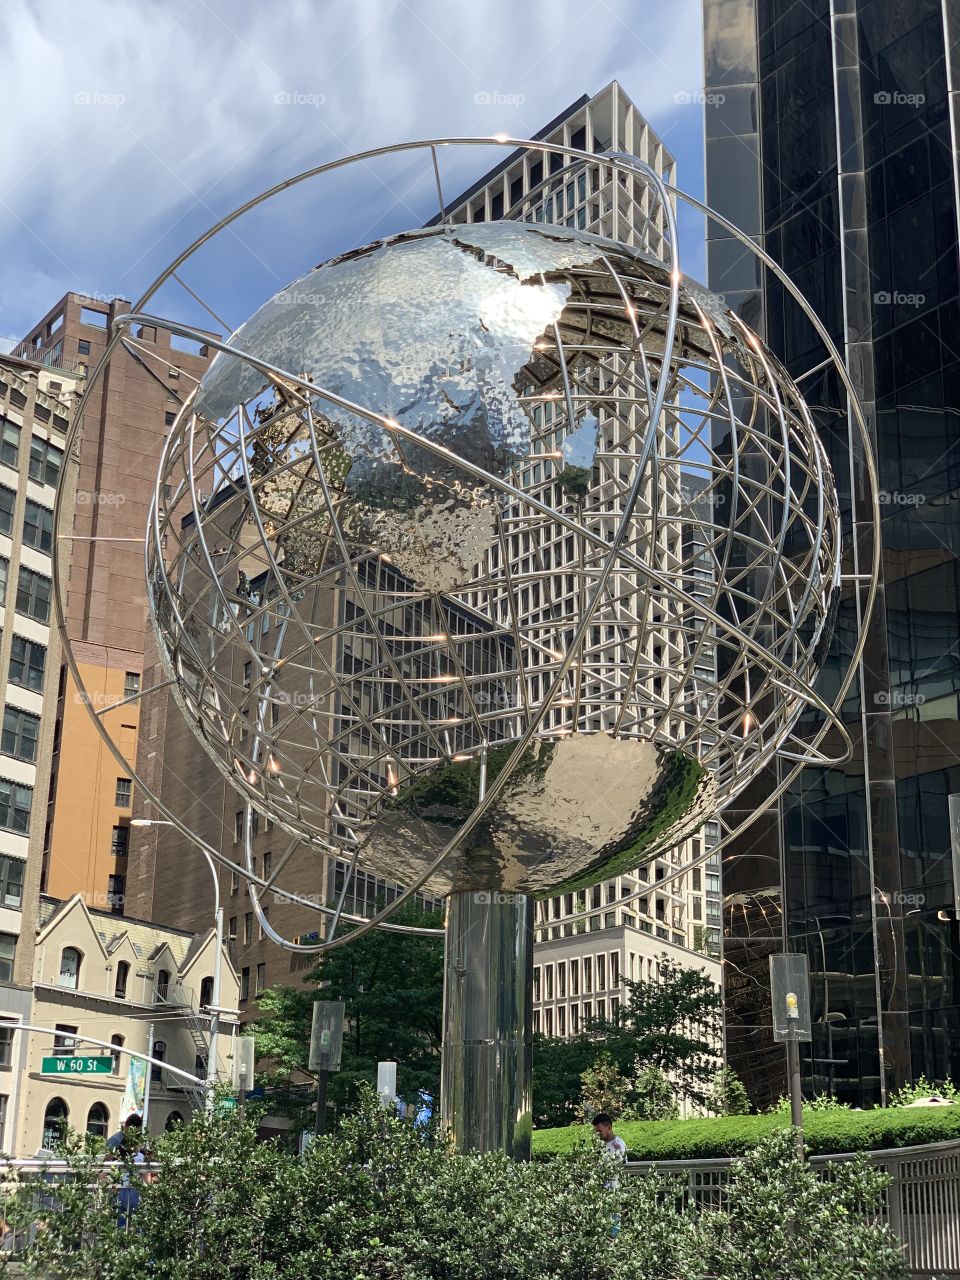 The globe sculpture at Columbus Circle. 